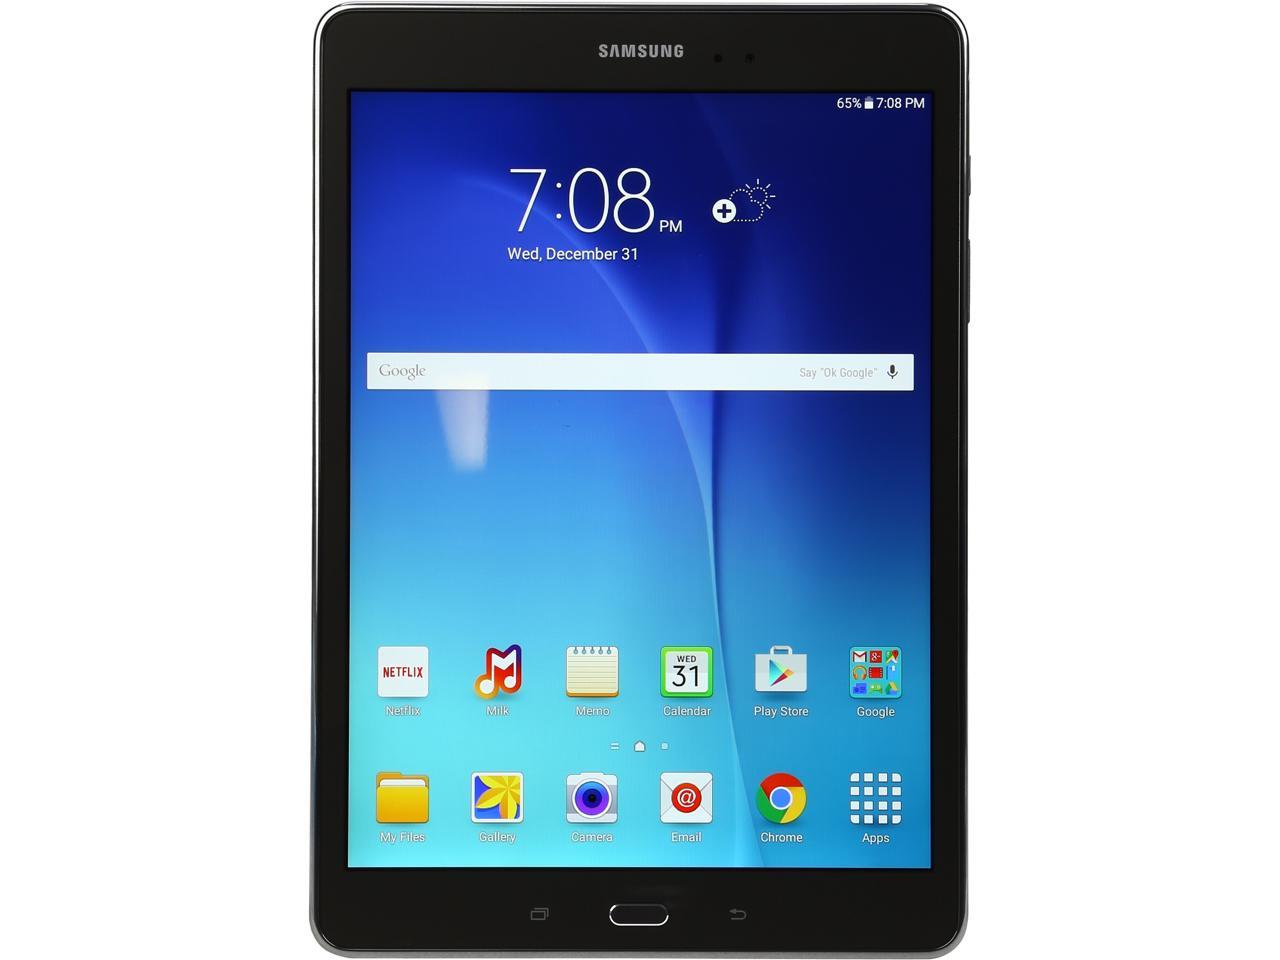 SAMSUNG Galaxy Tab A 9.7 Qualcomm APQ8016 (1.20 GHz) 1.5 GB Memory 16 GB Flash Storage 9.7